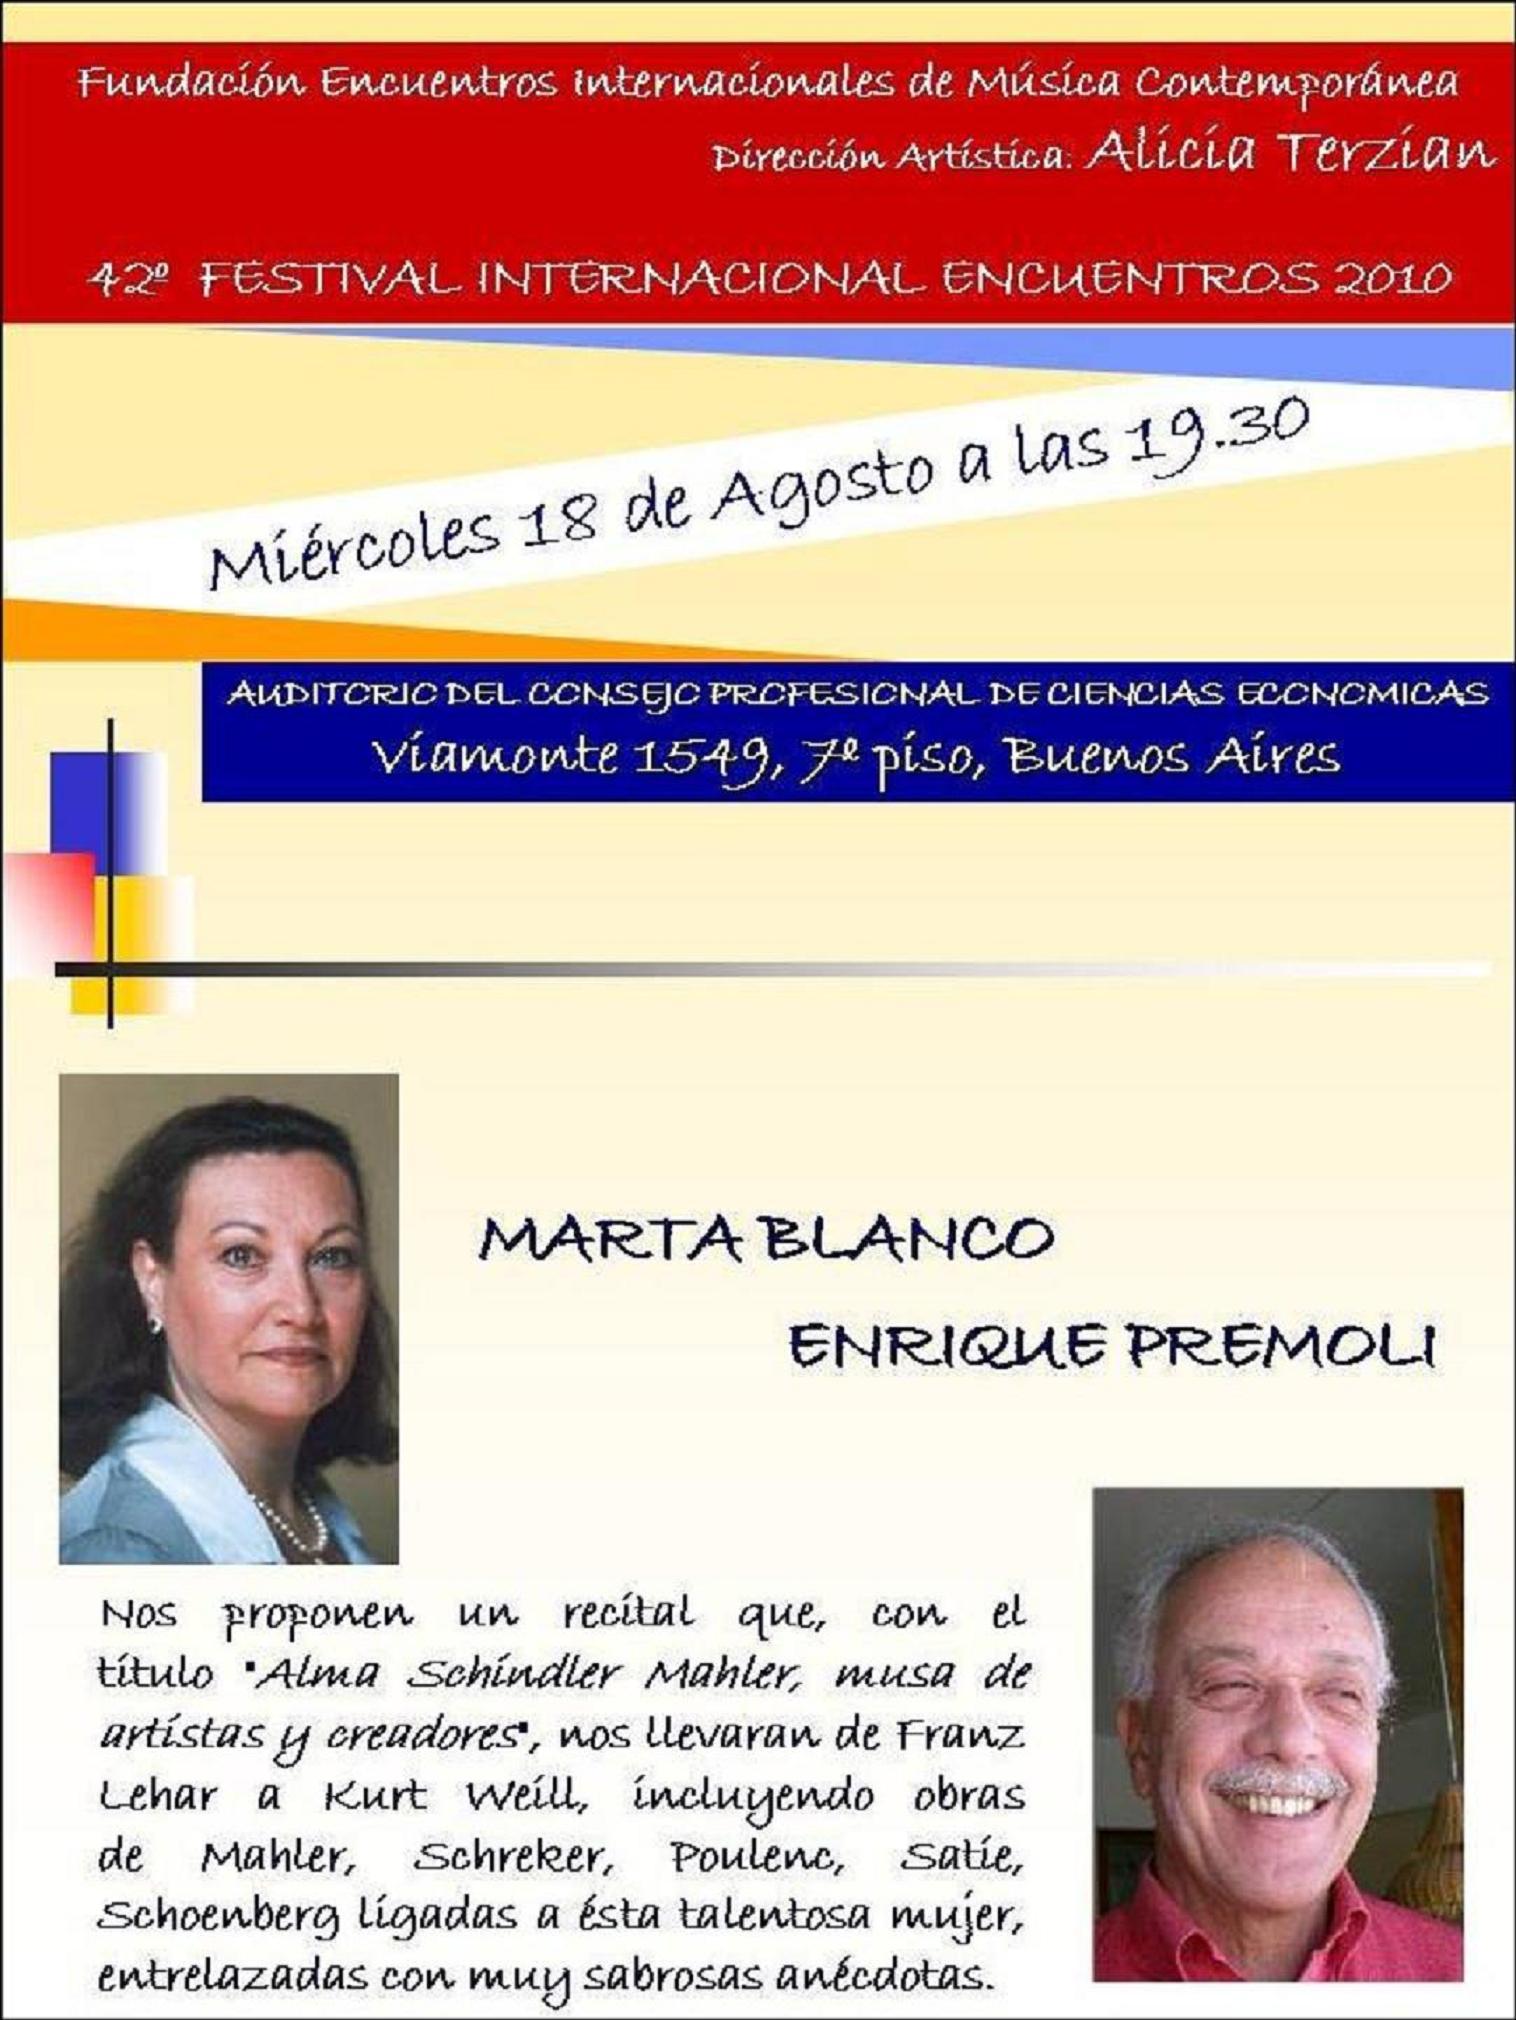 Marta Blanco / Enrique Premoli en el 42 Festival Internacional Encuentros 2010. Bs.As.